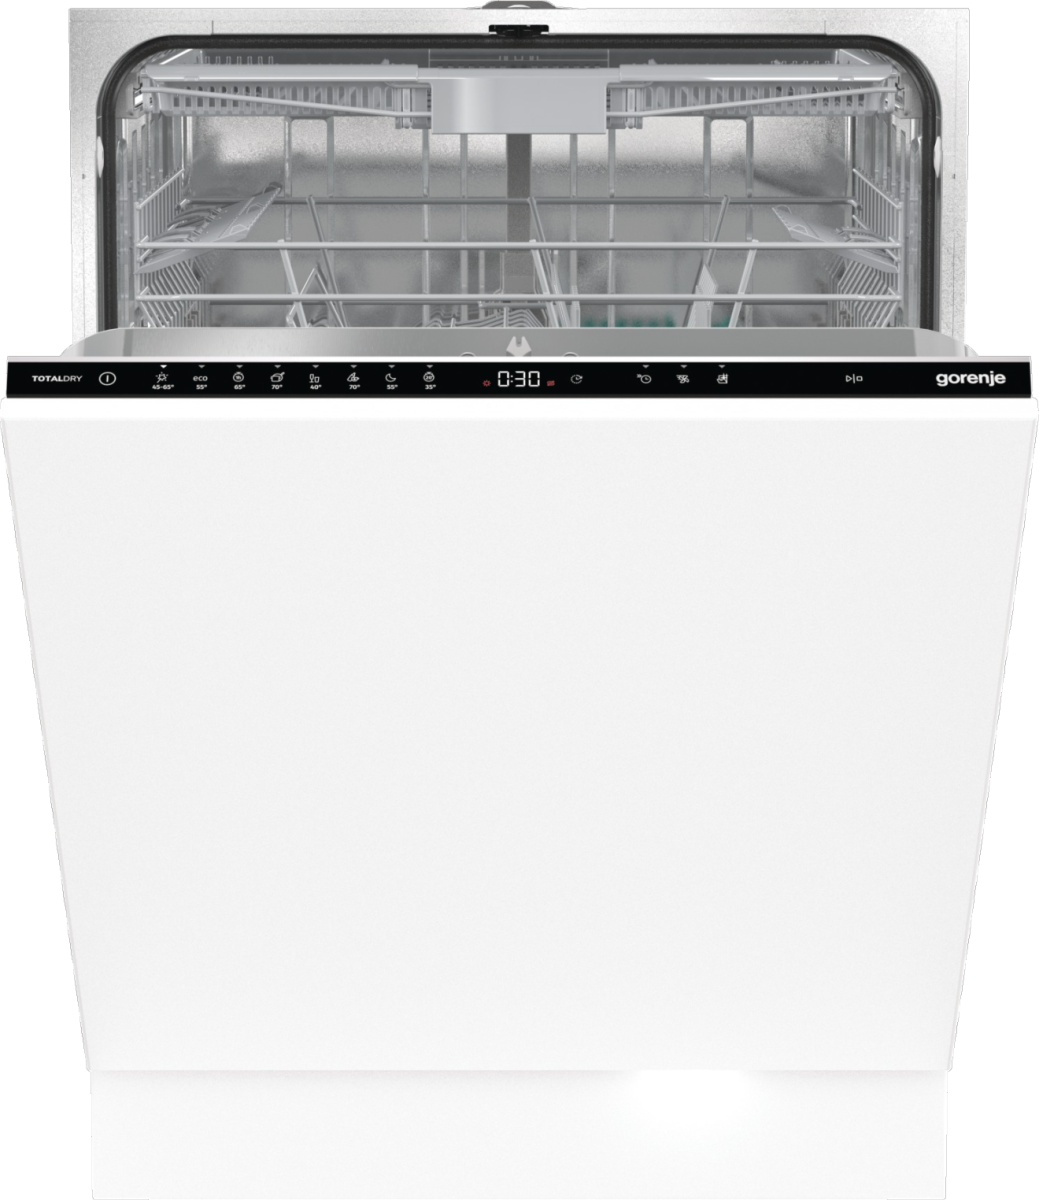 Встраиваемая посудомоечная машина Gorenje GV663D60 встраиваемая посудомоечная машина gorenje gv643d60